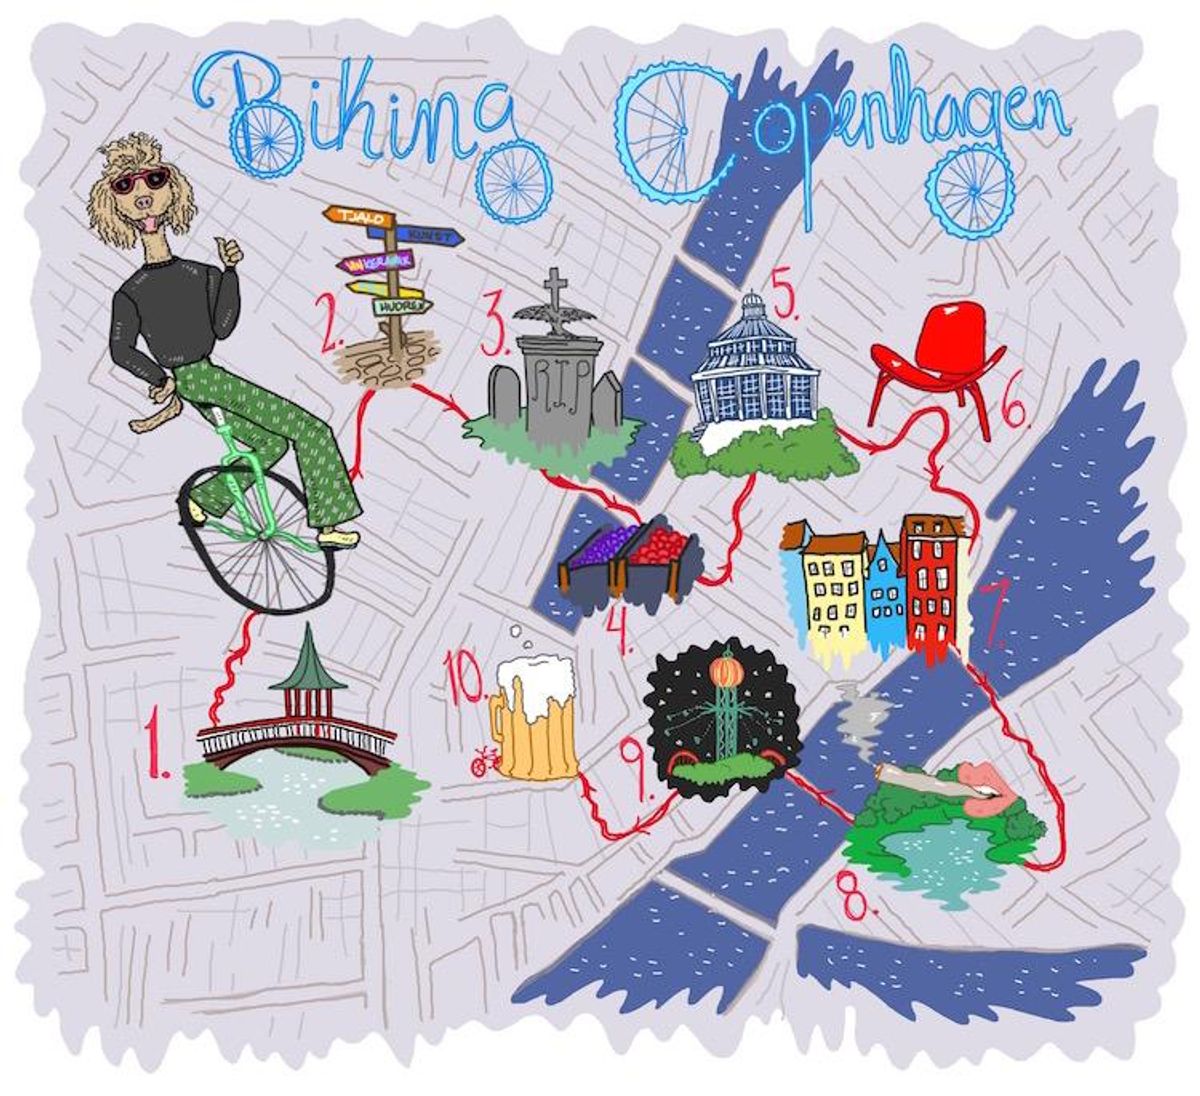 Biking Copenhagen: 10 Sights to See on Two Wheels